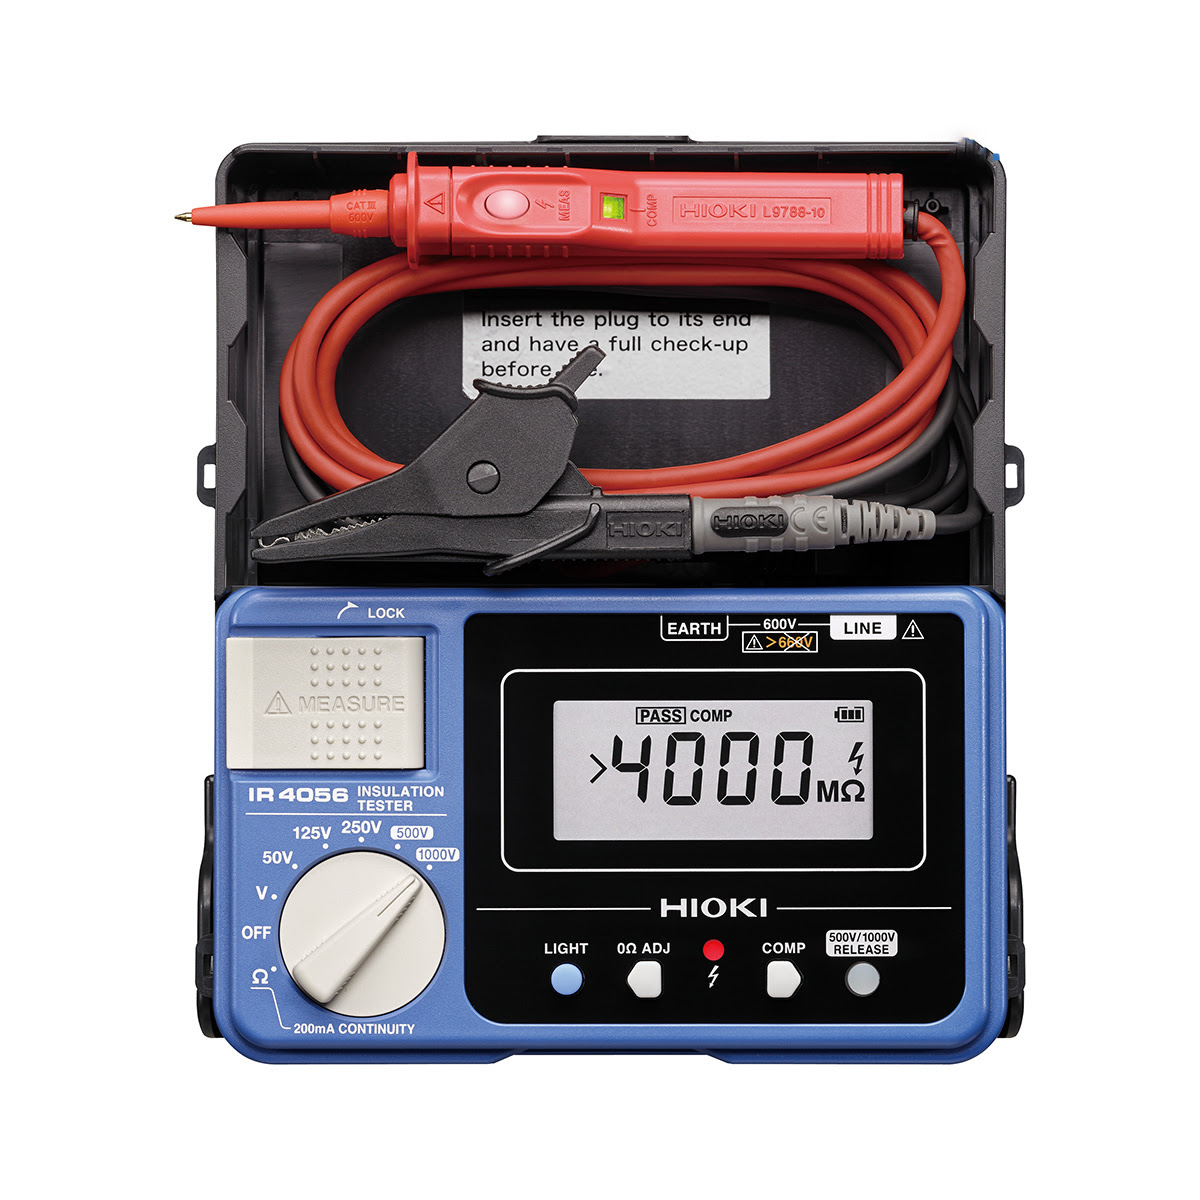 đặc điểm nổi bật của thiết bị đo điện trở cách điện hioki ir4056-21